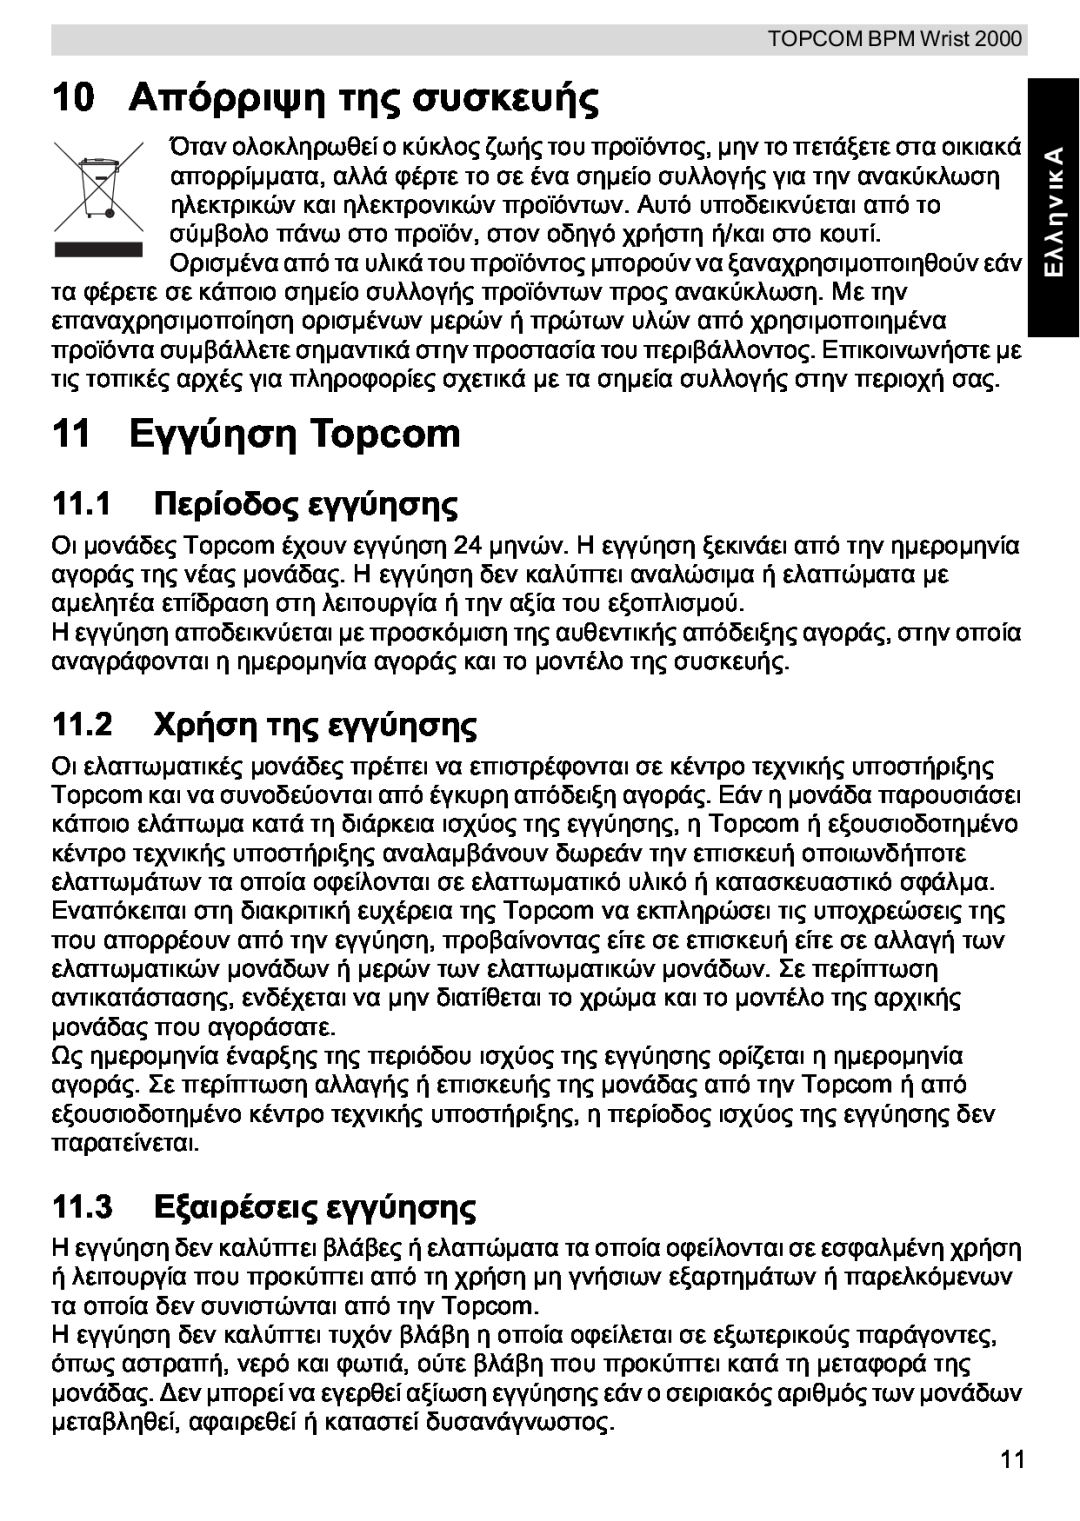 Topcom BPM WRIST 2000 manual 11.1, 11.2, 11.3, Topcom Topcom 